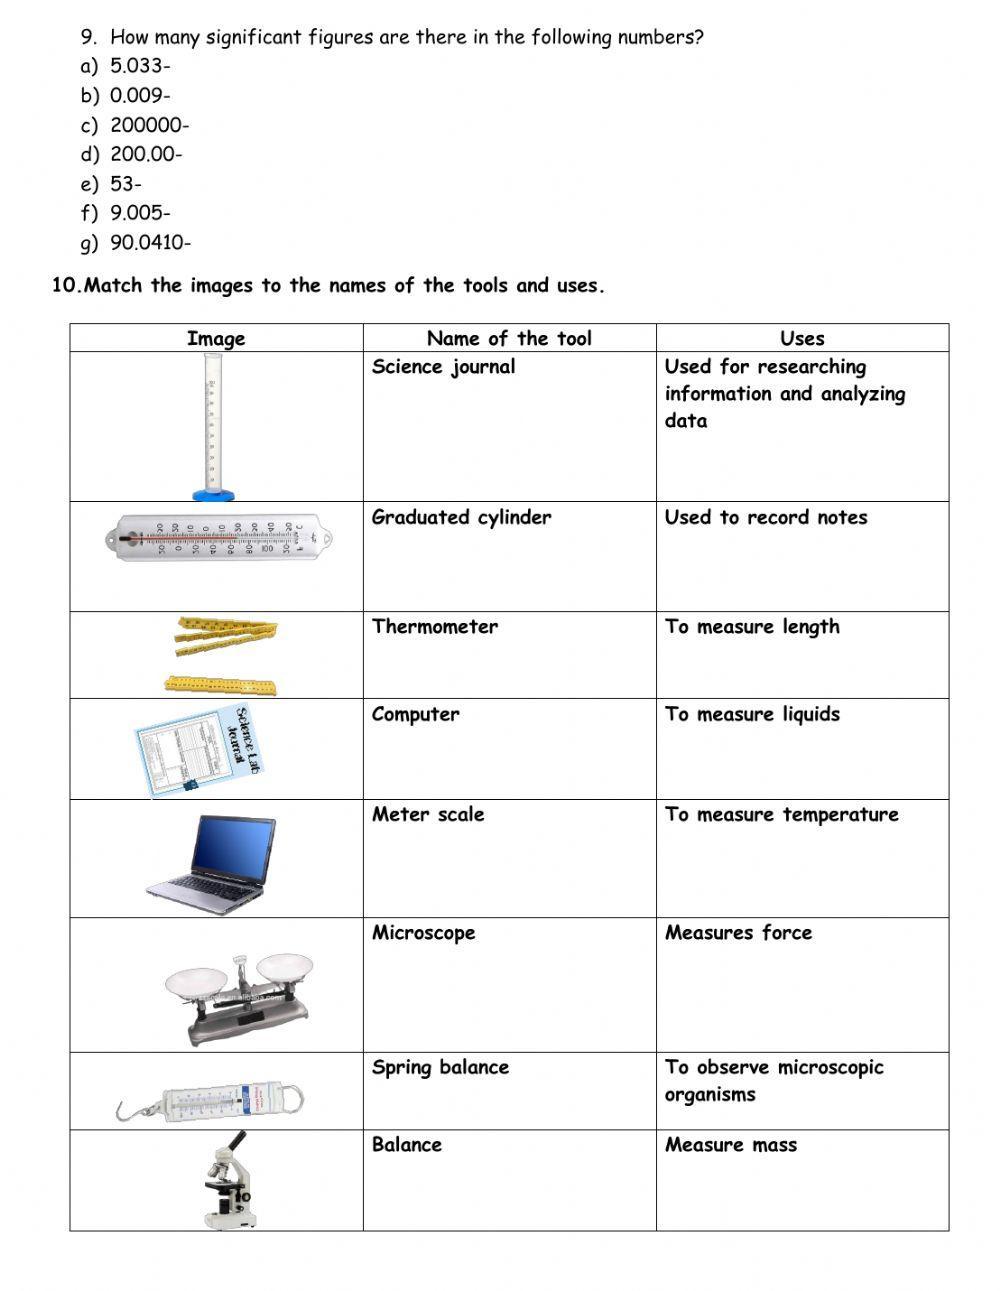 Measurement and Scientific tools